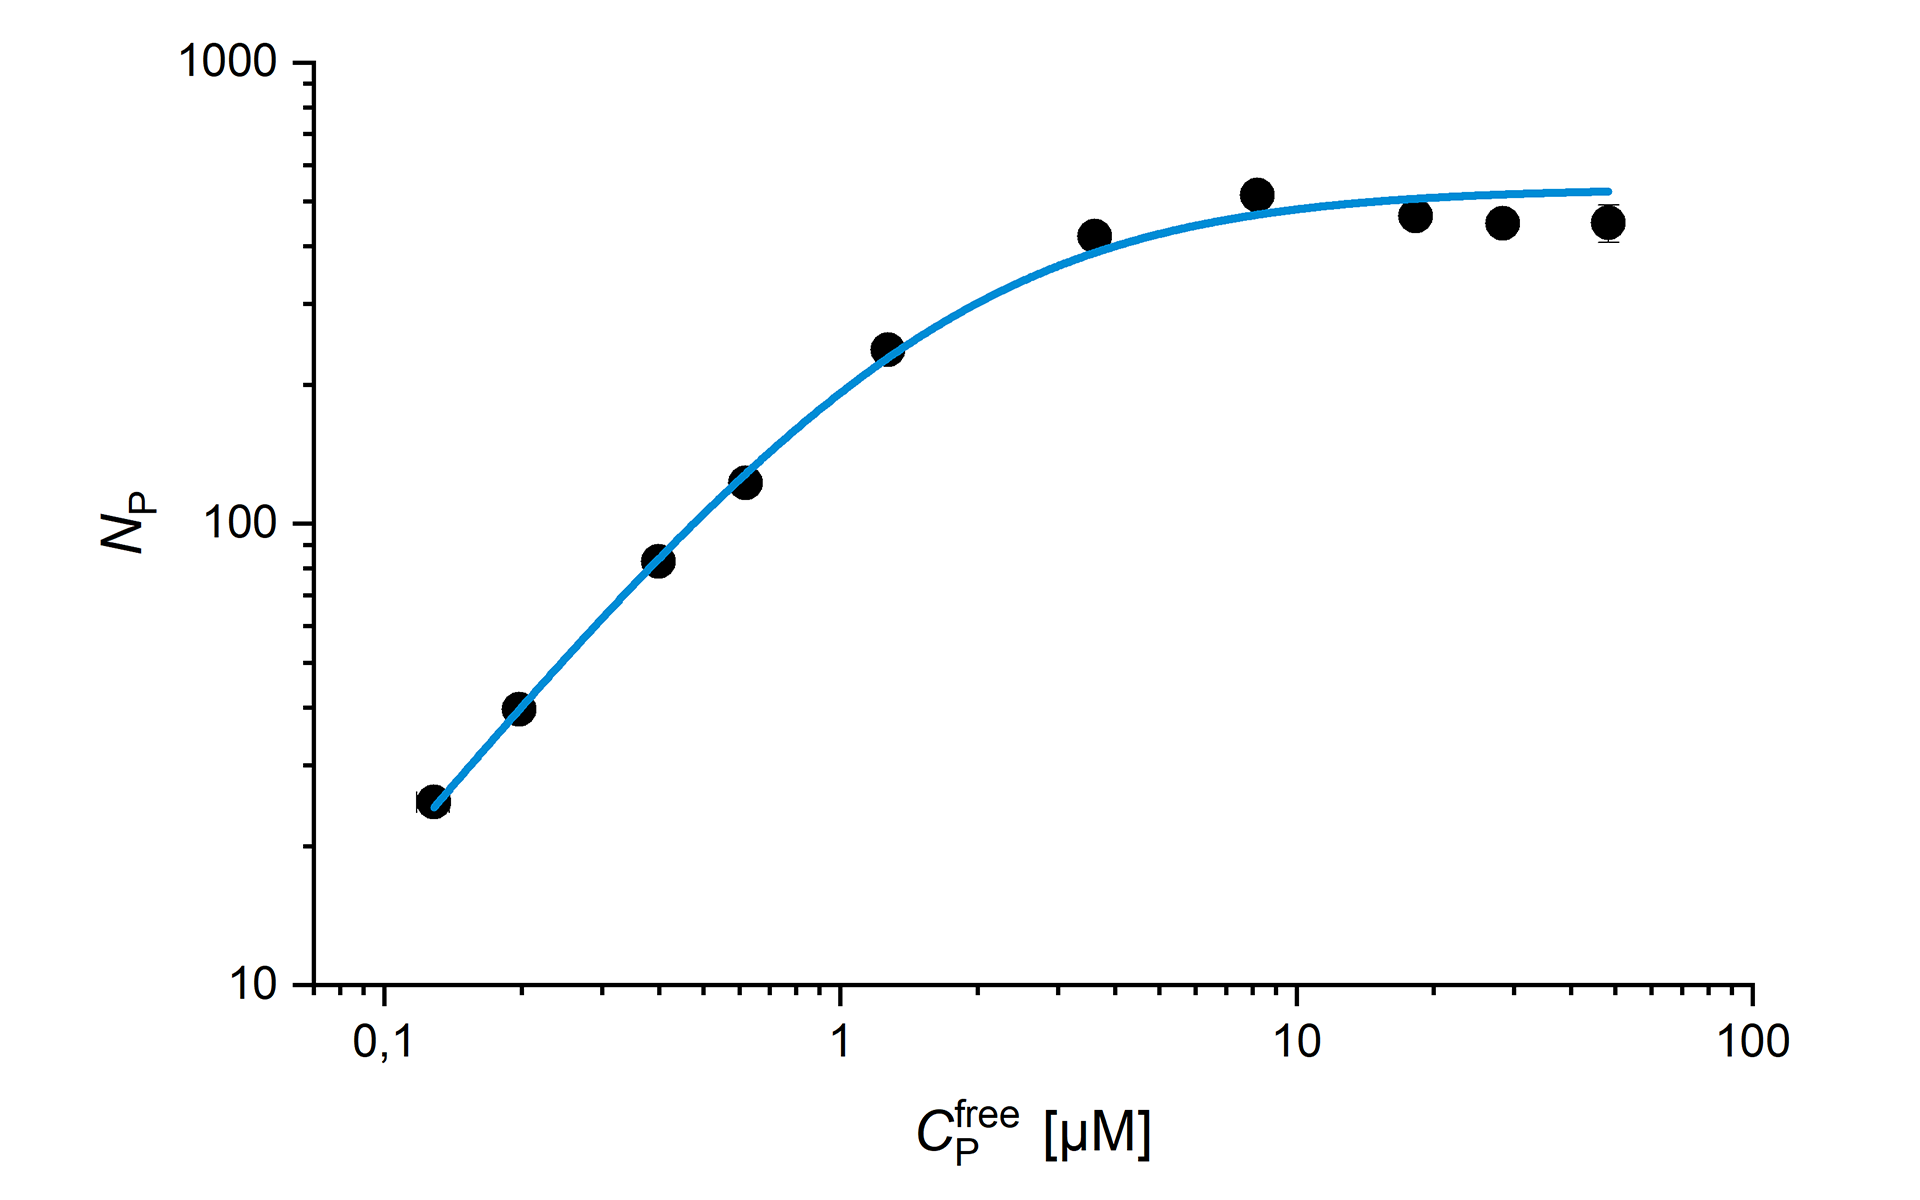 Rot fluoreszierende kleine Liposome und unterschiedliche Konzentration des Sar1p-Proteins (teilweise mit Alexa Fluor 488 markiert) wurden in einer Multiwellplatte mit 96 Positionen vermischt und über einen Zeitraum von 15 Stunden automatisch gemessen. Krüger et al., Biophys. J. 2017.